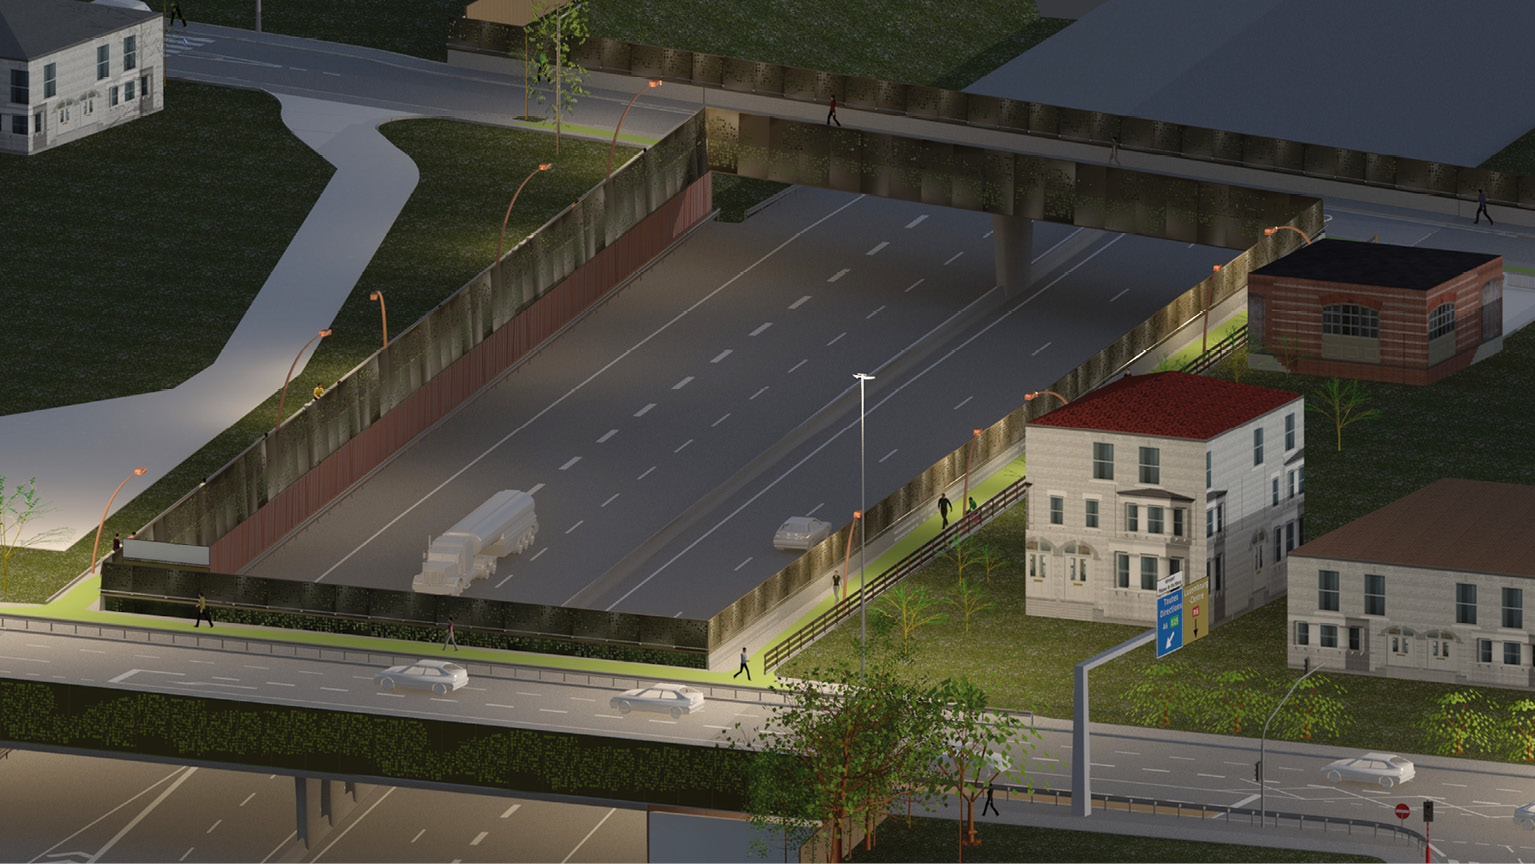 5 Modélisation numérique 3D - Réaménagement des ouvrages de l’échangeur de Strassen / Kaell architecture / Administration des Ponts et Chaussées